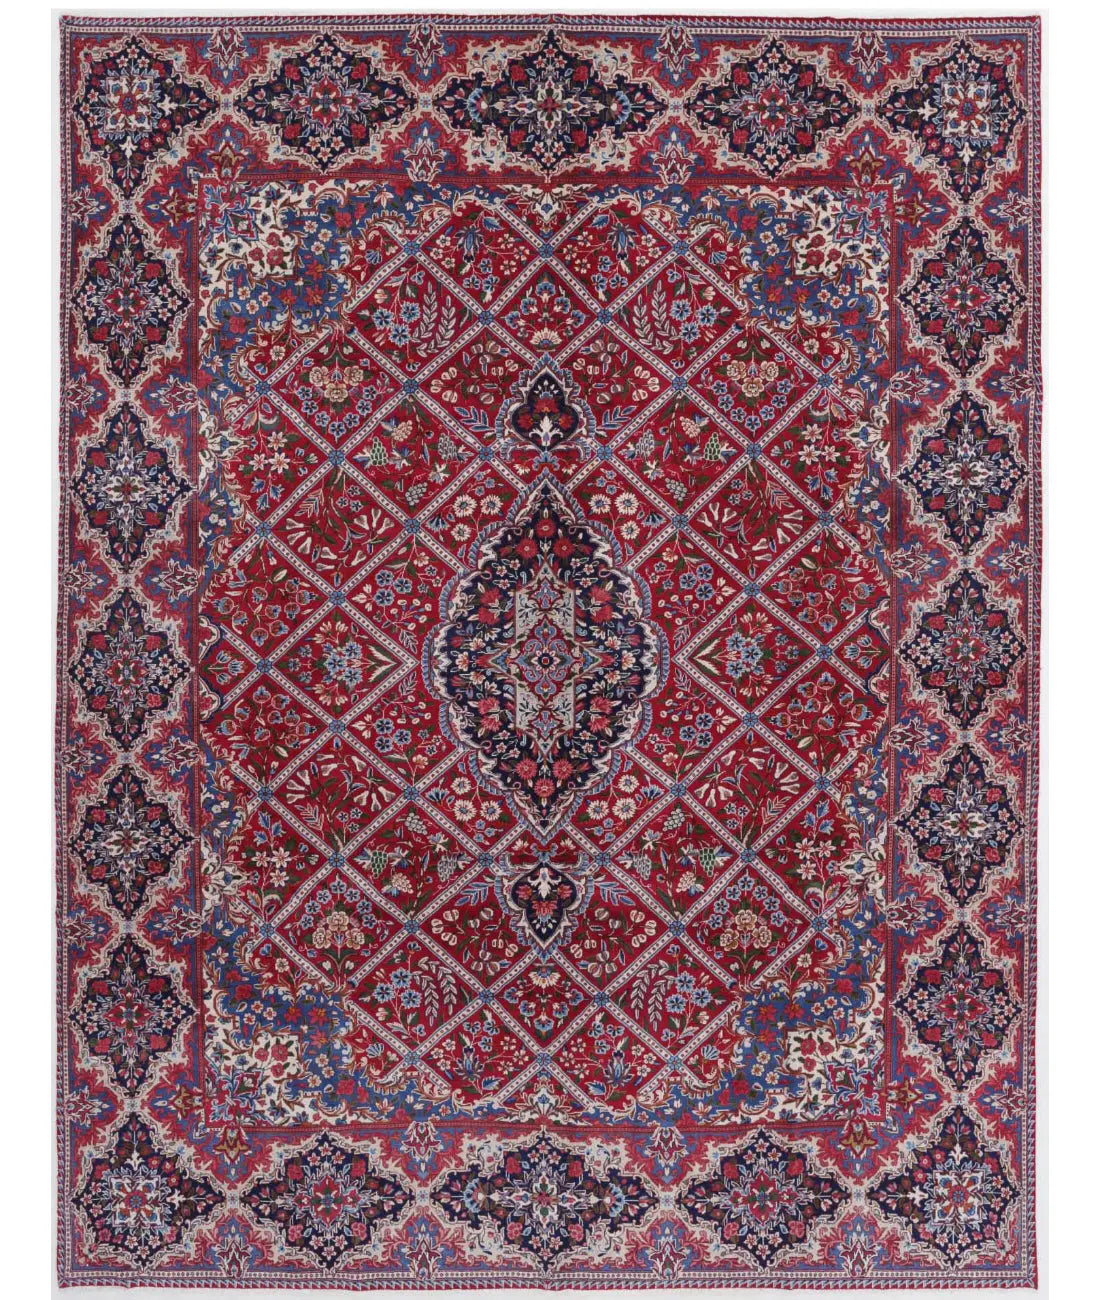 Hand Knotted Persian Kerman Wool Rug - 9'9'' x 12'9'' - Arteverk Rugs Area rug